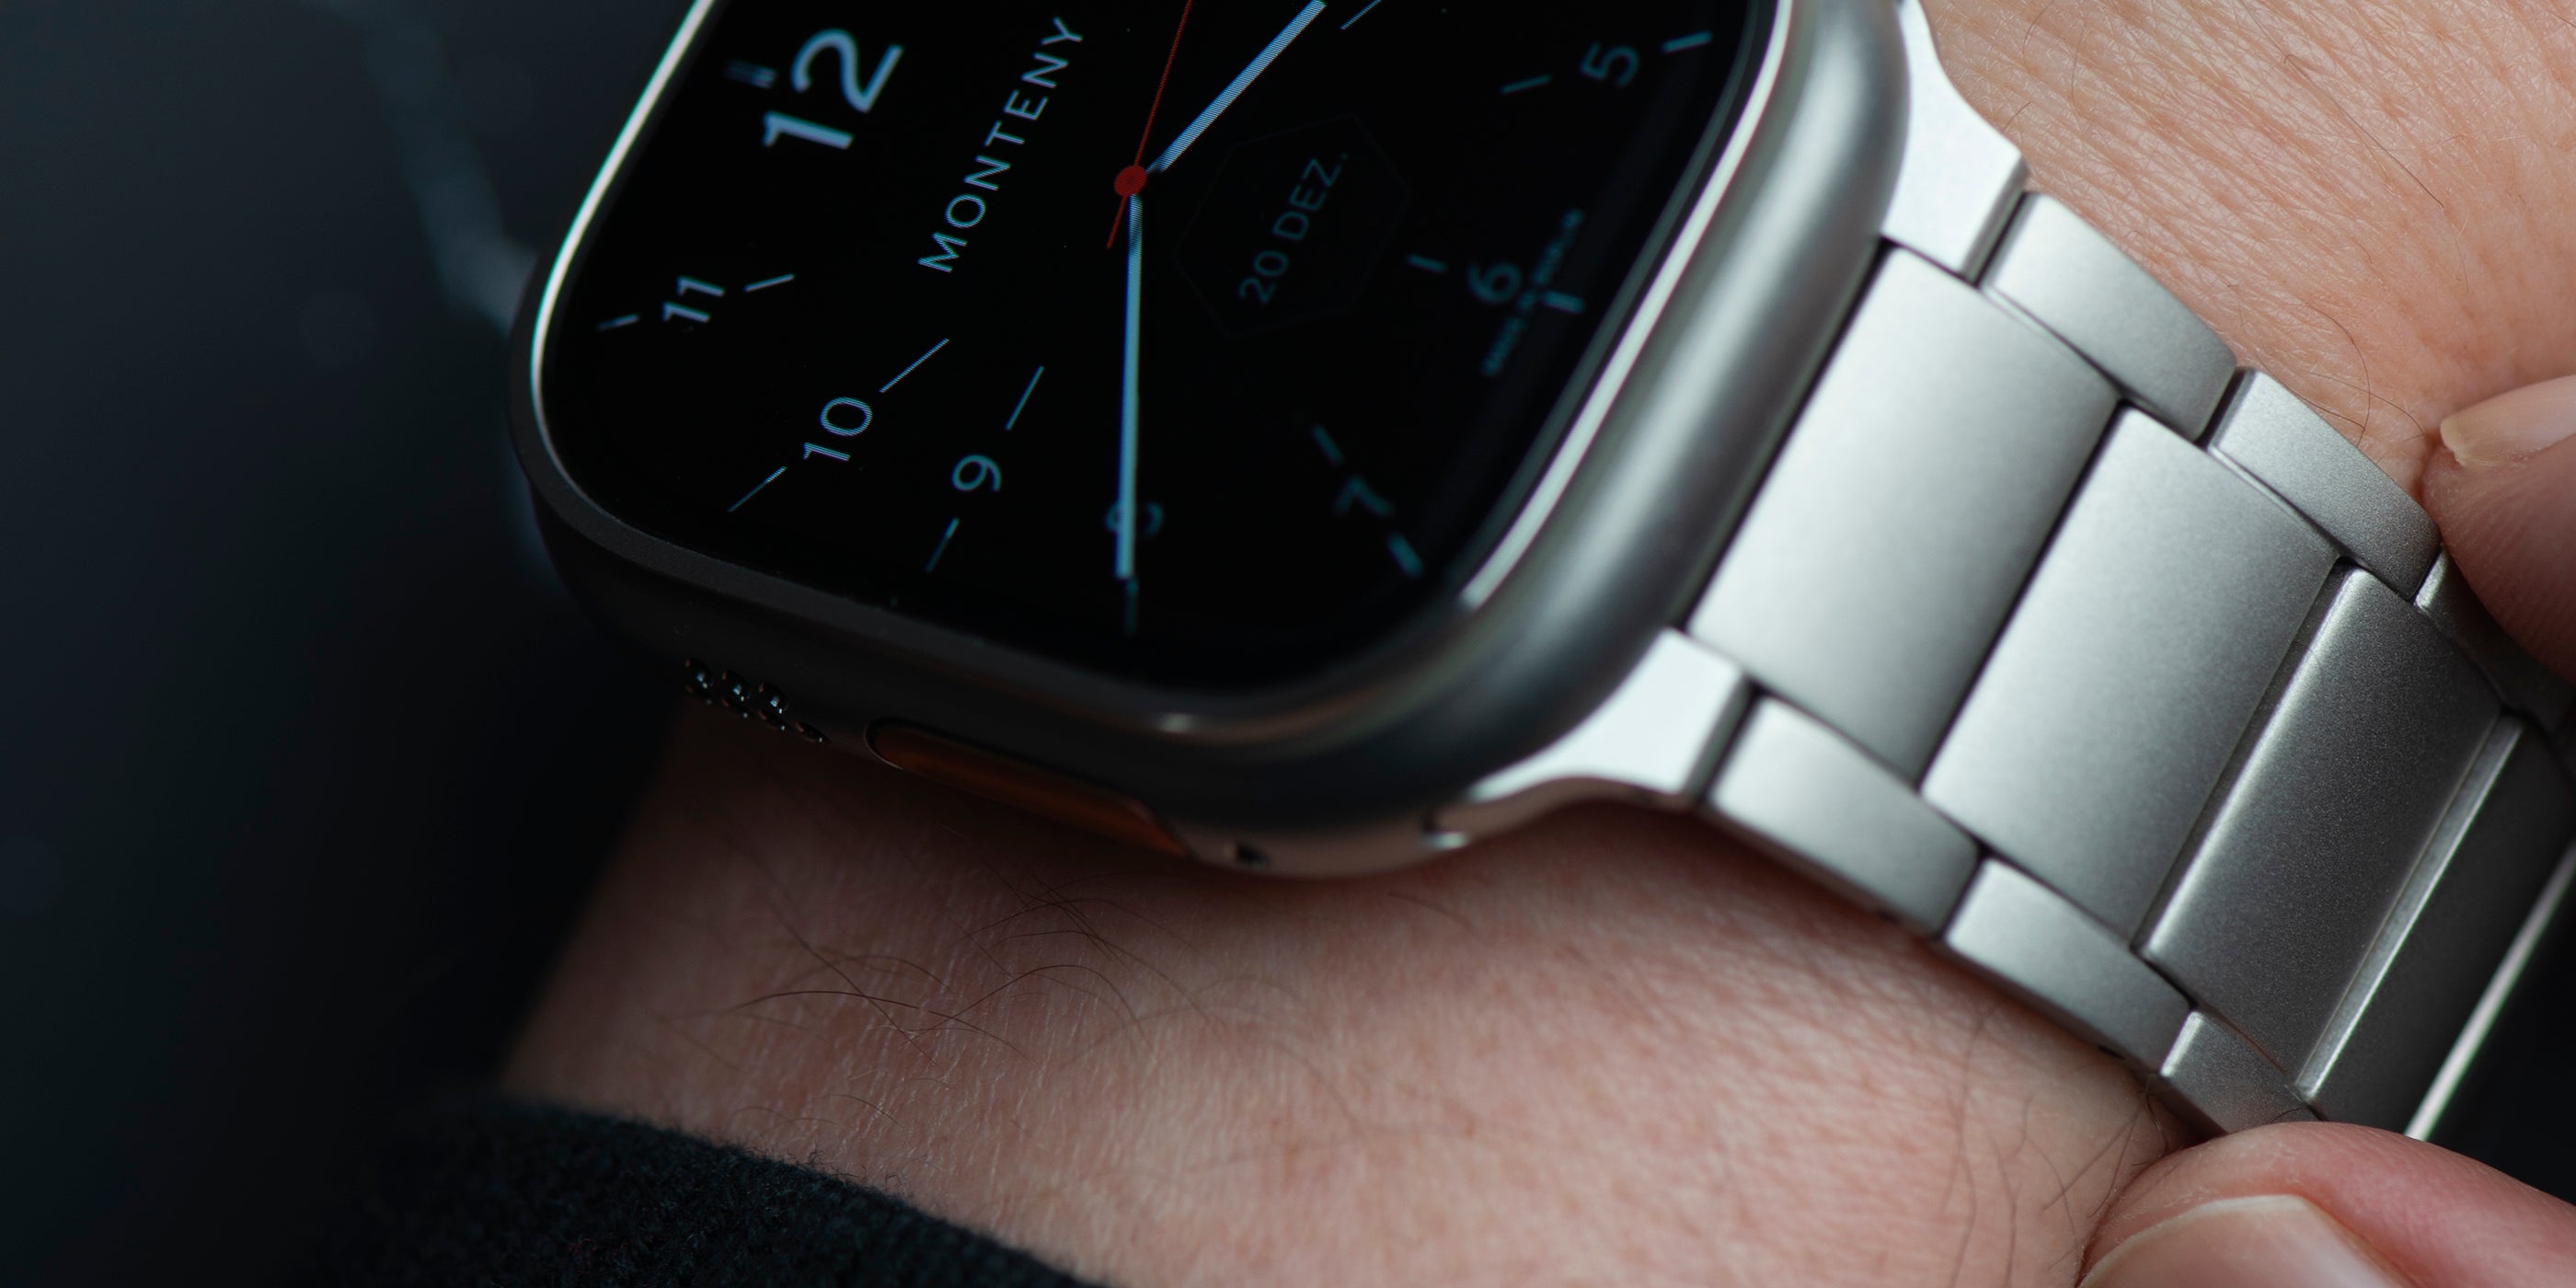 hyperion-armband-an_apple-watch-ultra-an-handgelenk-2-monteny